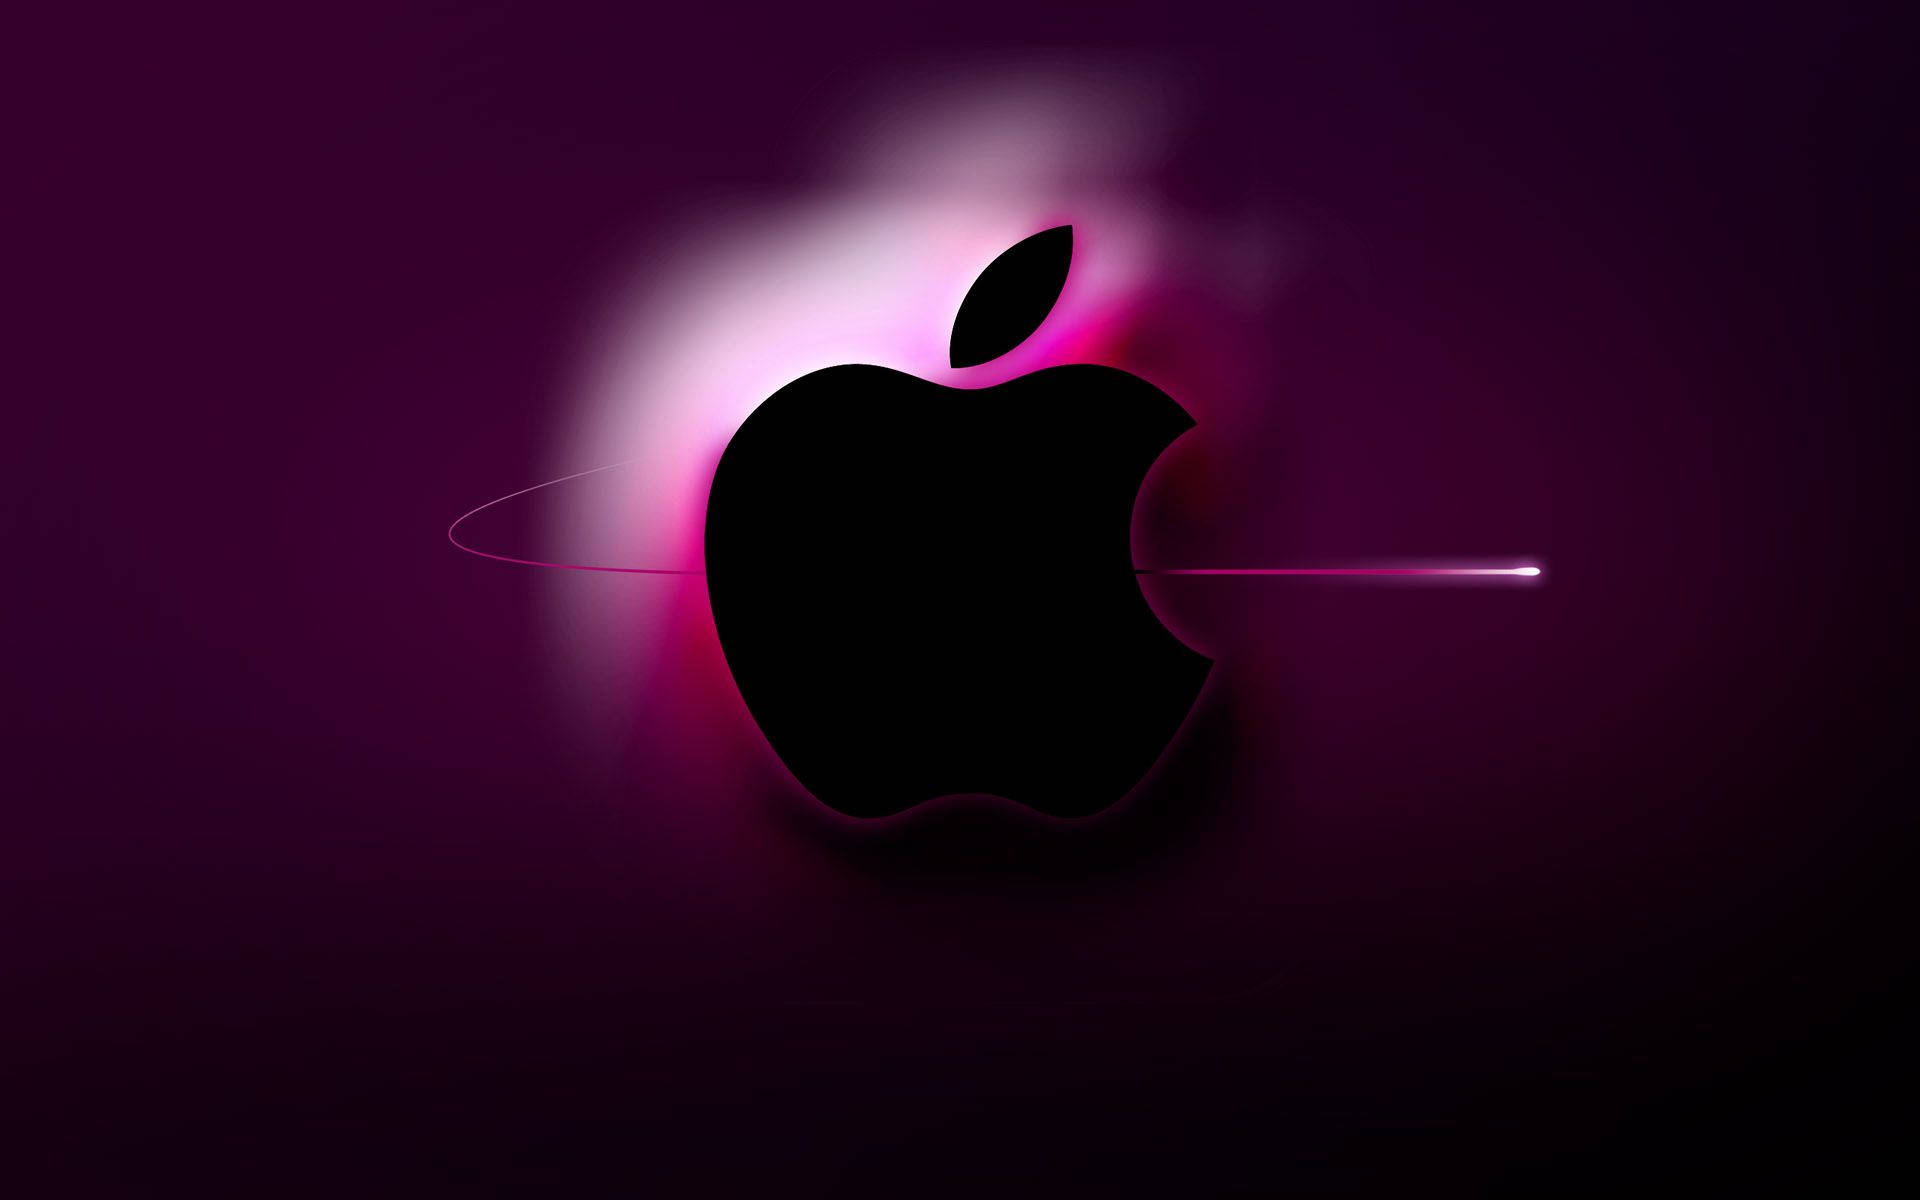 Imagende Apple Hd Para Escritorio, Como La Adición Perfecta A La Estación De Cualquier Amante De La Tecnología. Fondo de pantalla